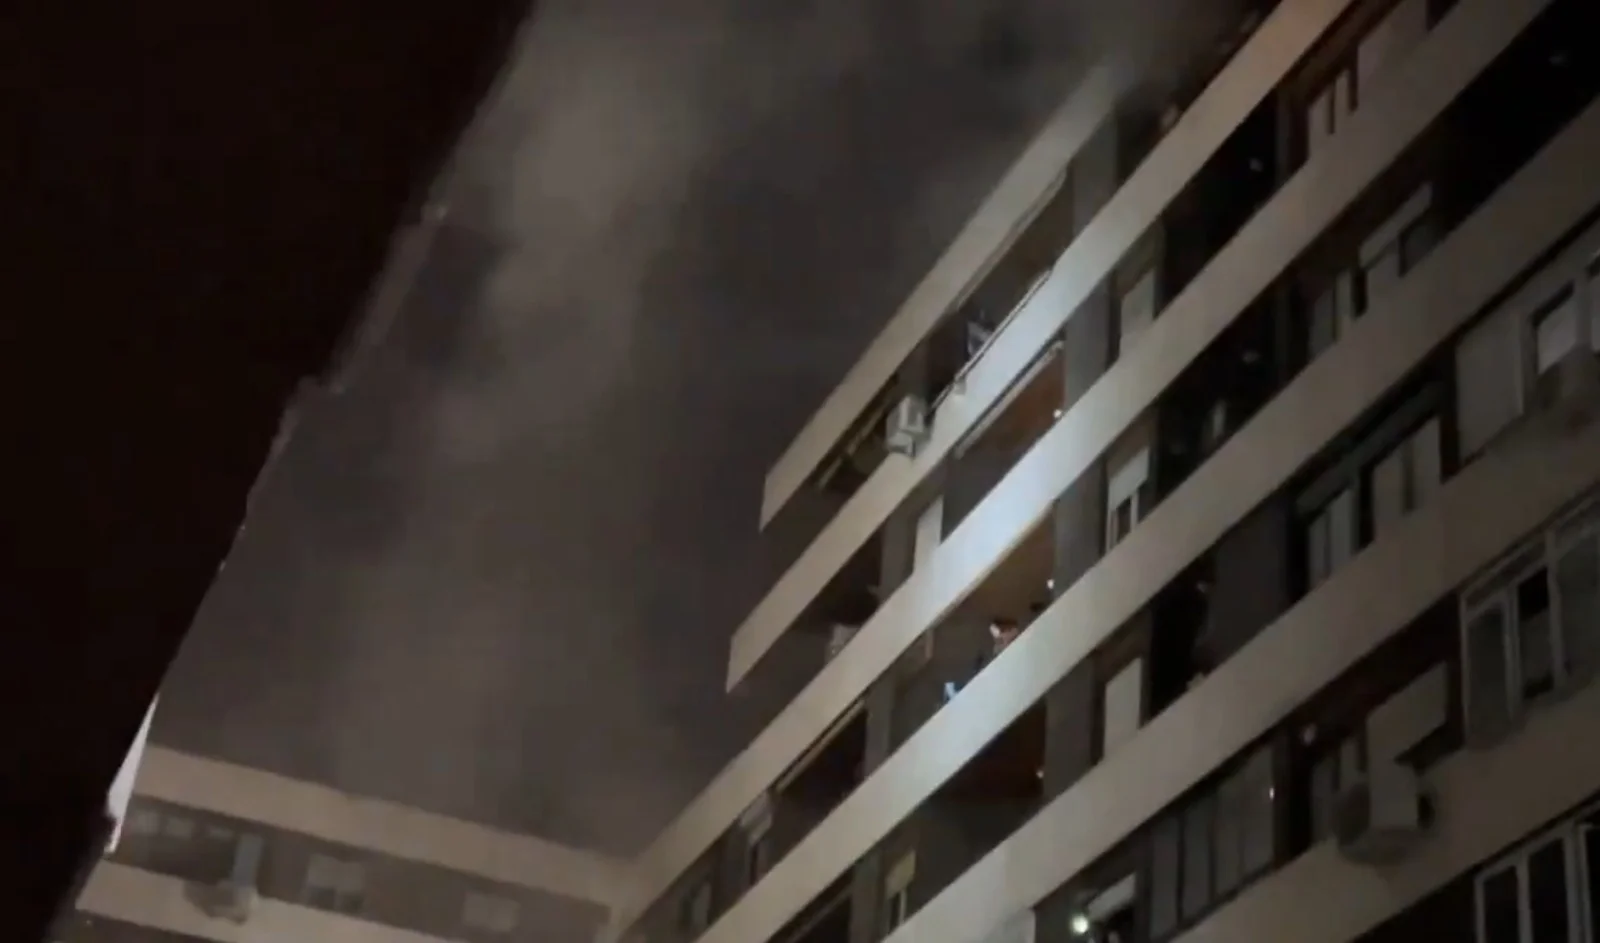 Incendio en un edificio de viviendas de Chamberí deja cinco heridos leves por inhalación de humo